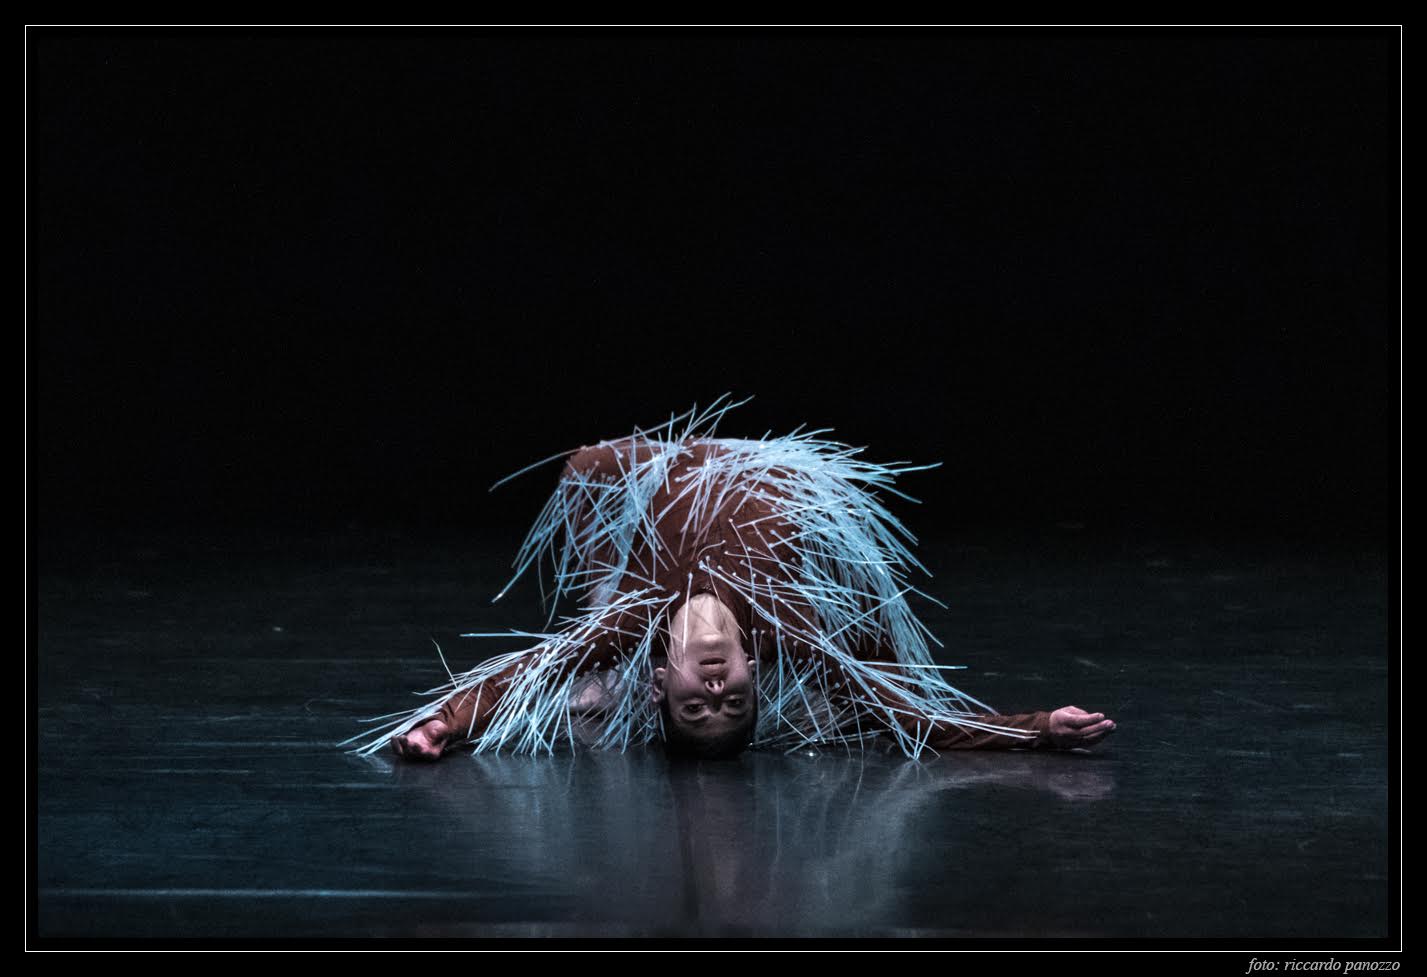 NUOVO TEATRO COMUNALE DI GRADISCA D’ISONZO ‘Le quattro stagioni’ con la Compagnia Opus Ballet in prima regionale Venerdì 2 febbraio